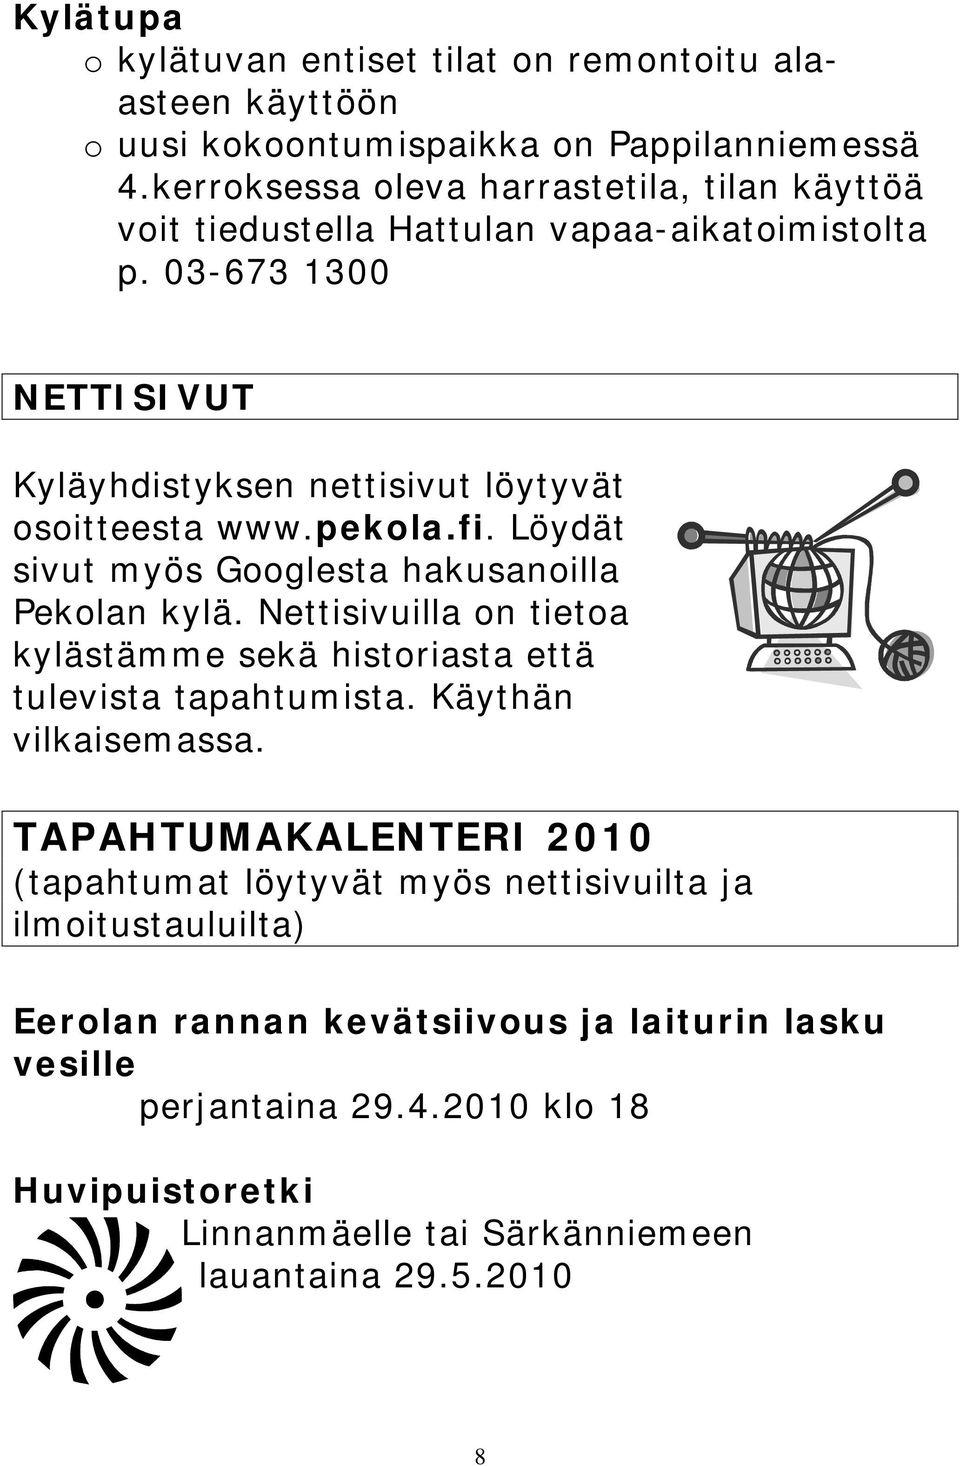 pekola.fi. Löydät sivut myös Googlesta hakusanoilla Pekolan kylä. Nettisivuilla on tietoa kylästämme sekä historiasta että tulevista tapahtumista. Käythän vilkaisemassa.